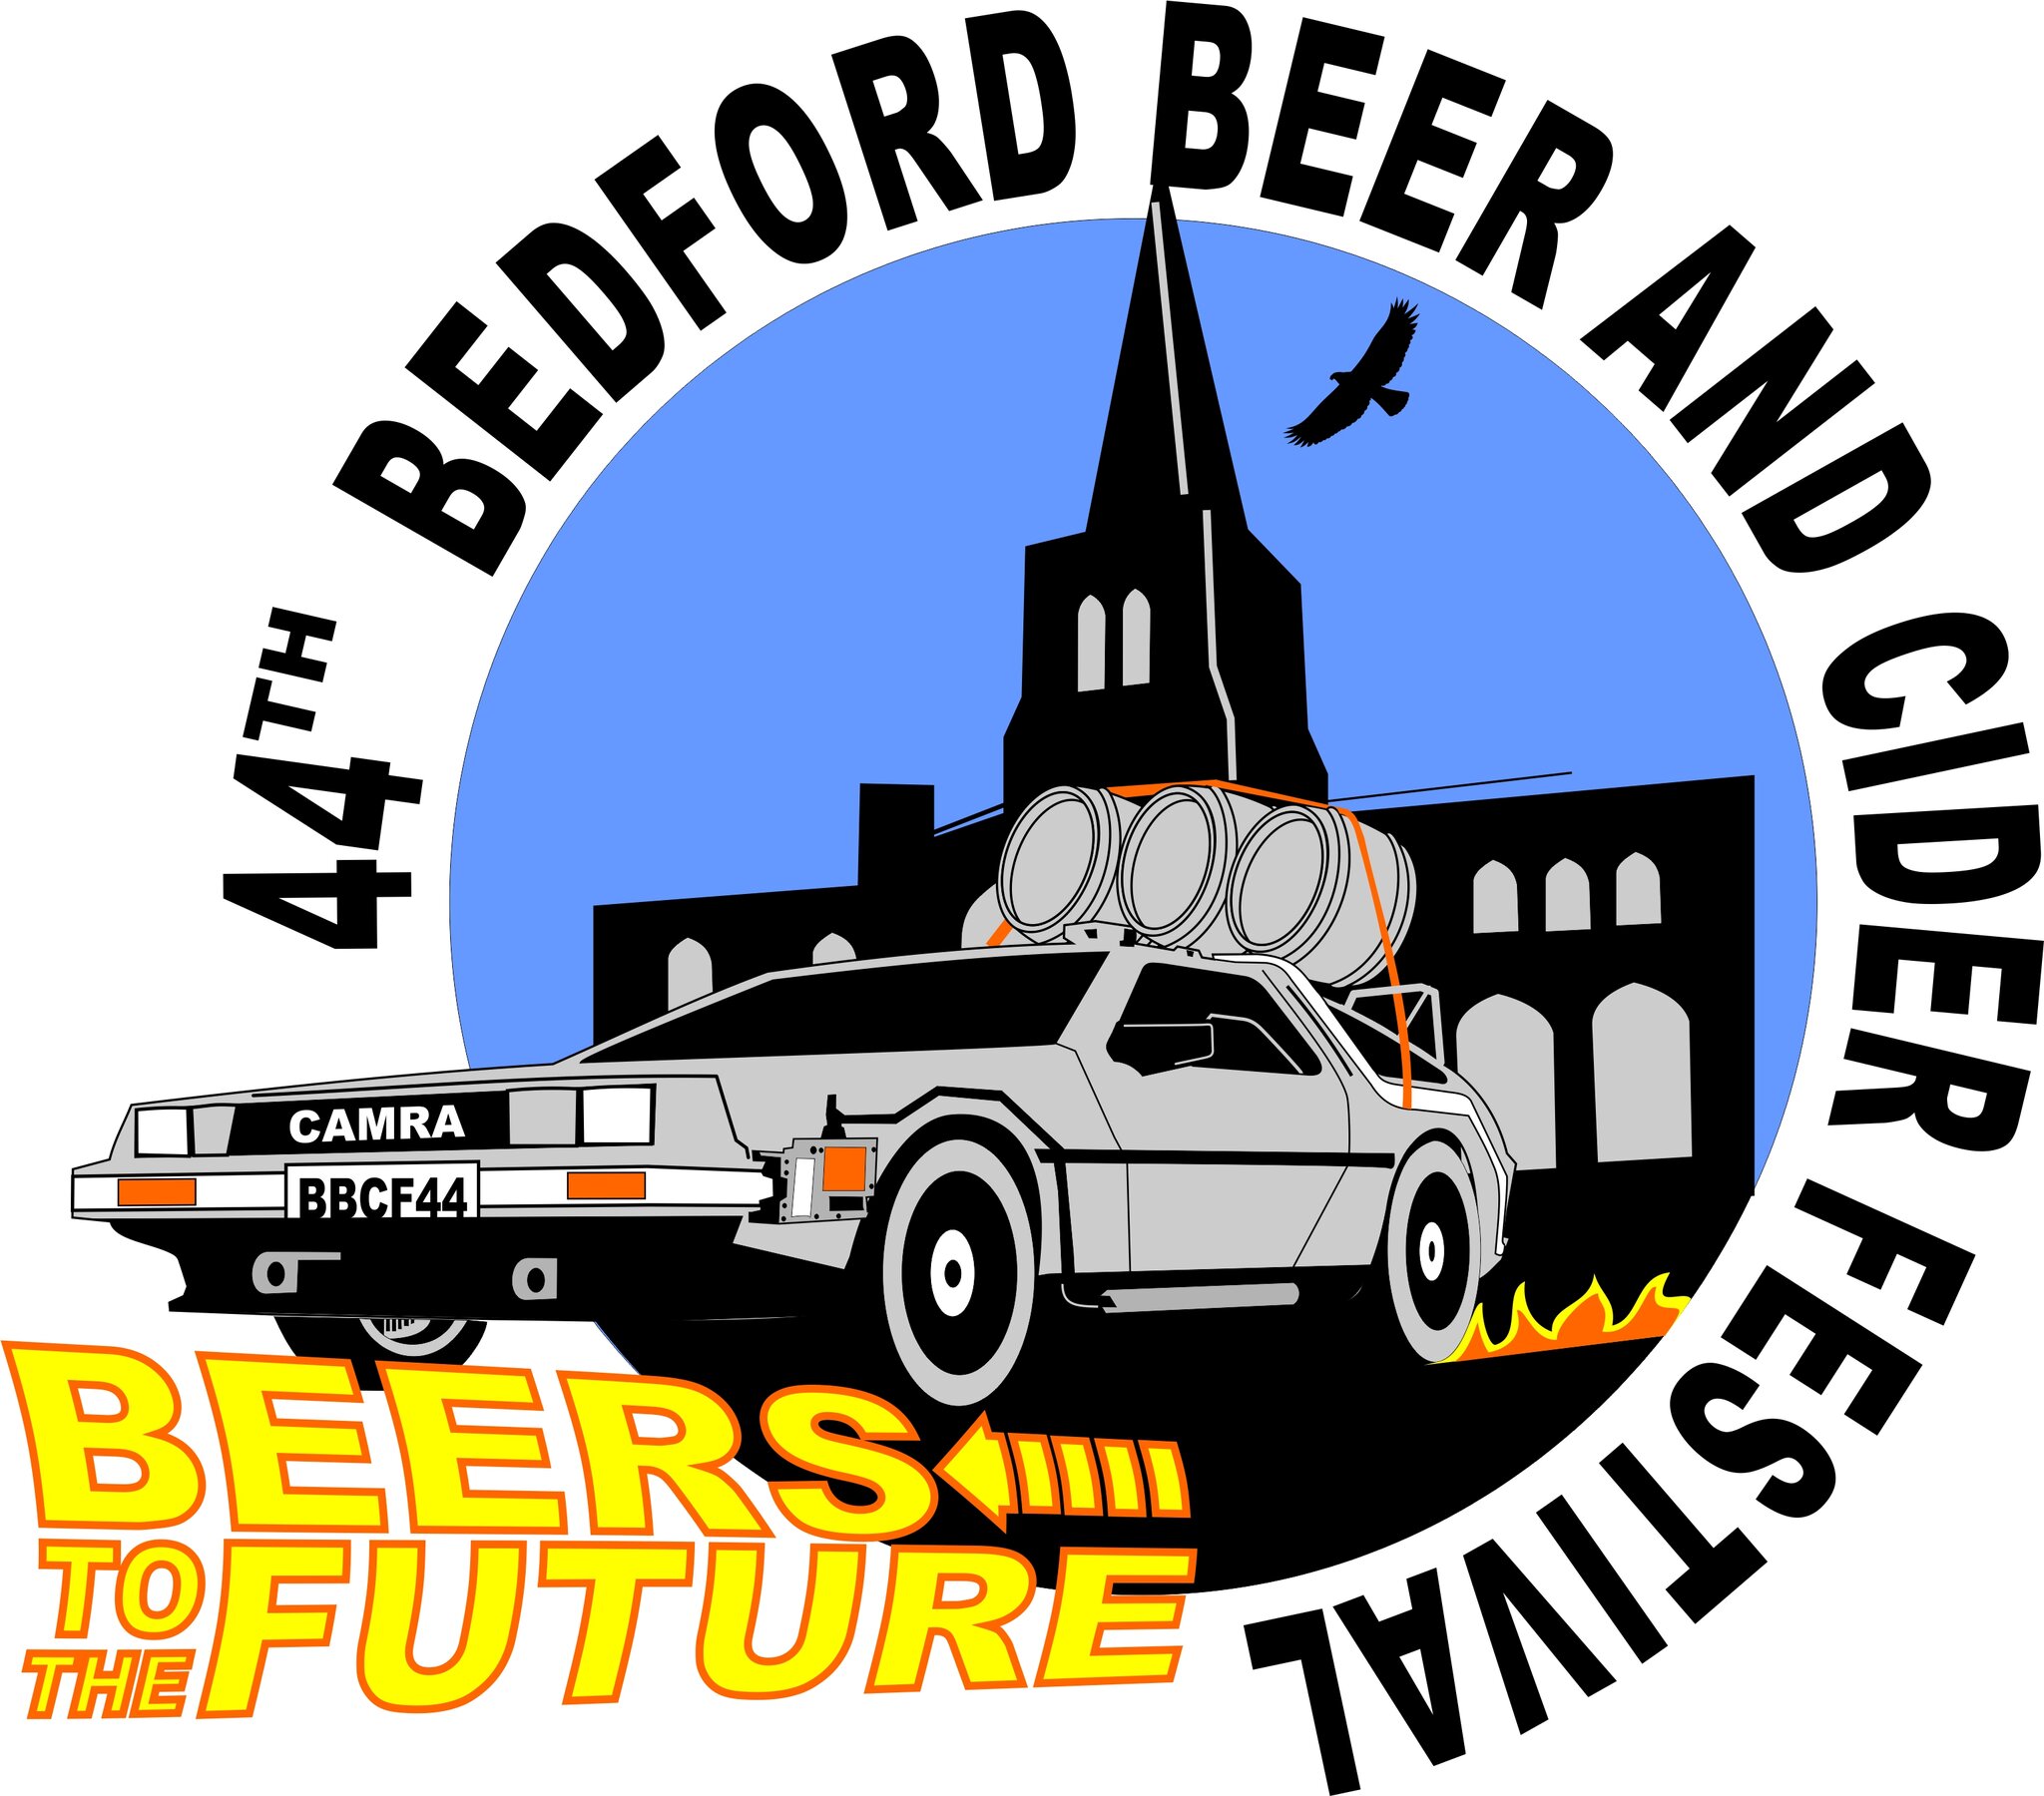 Bedford Beer & Cider Festival North Beds CAMRA